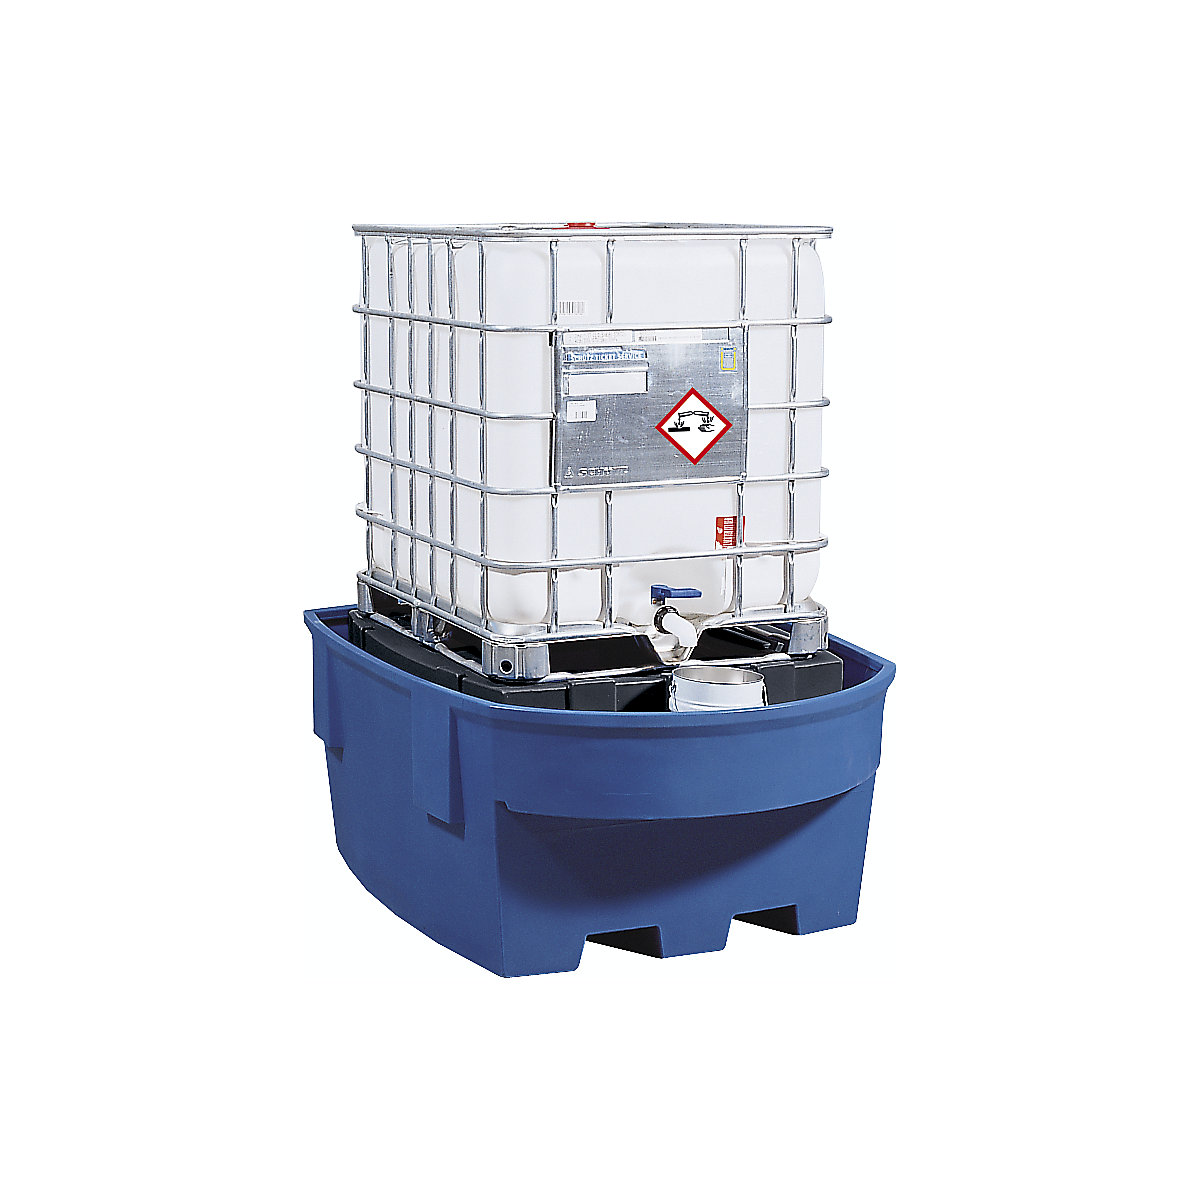 Záchytná vaňa z PE pre cisternové kontajnery IBC/KTC – asecos